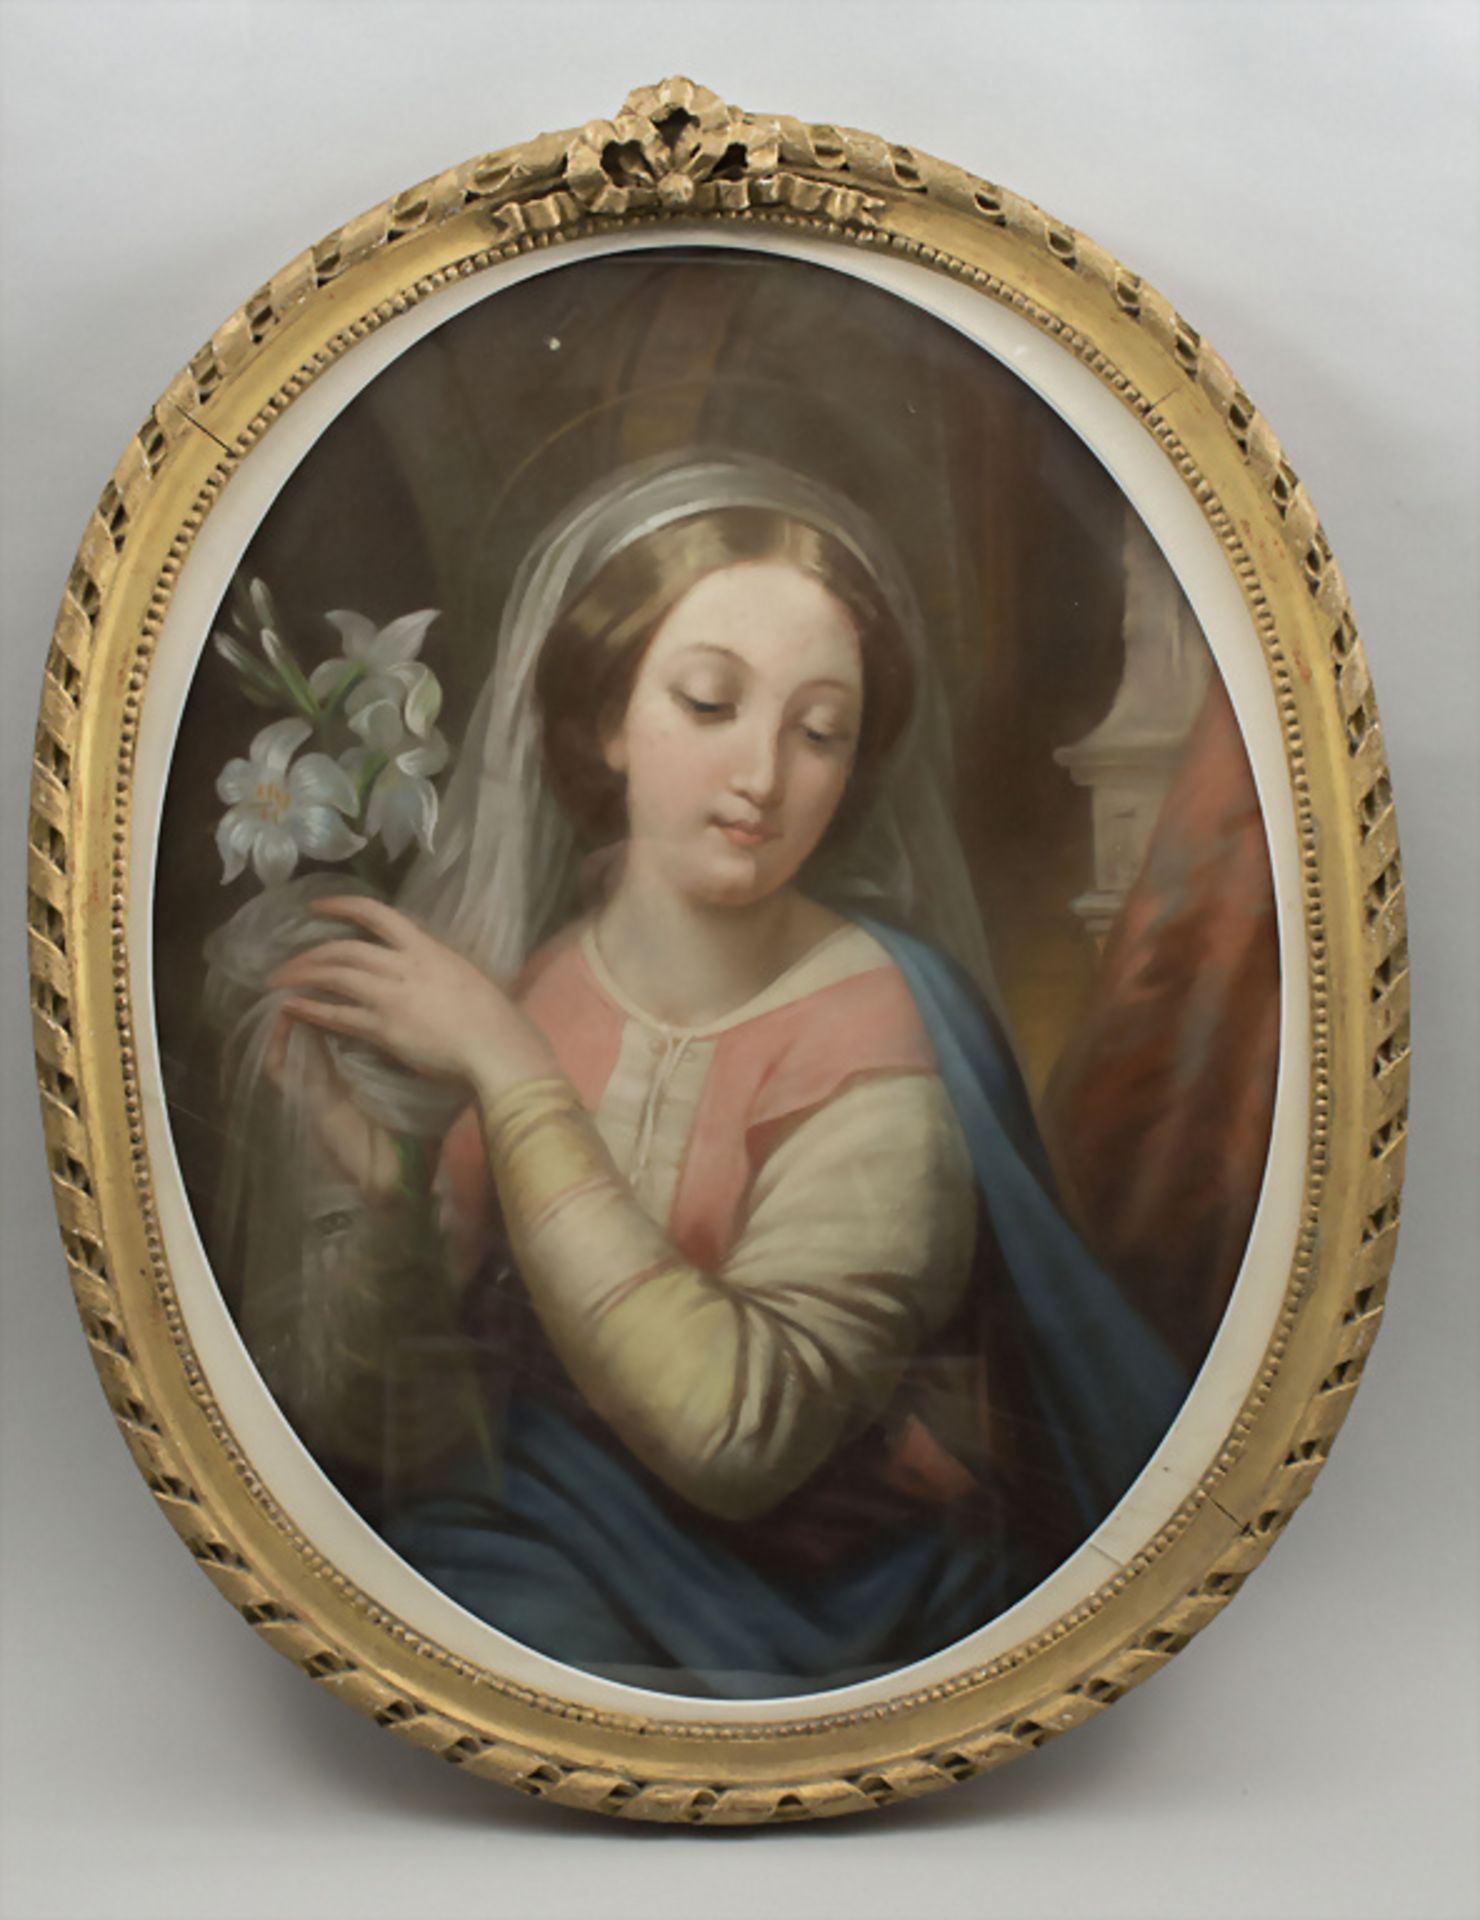 Unbekannter Künstler des 19. Jh., 'Heilige Maria mit Lilie' / 'Holy Mary with a lily', 1859 - Bild 2 aus 6